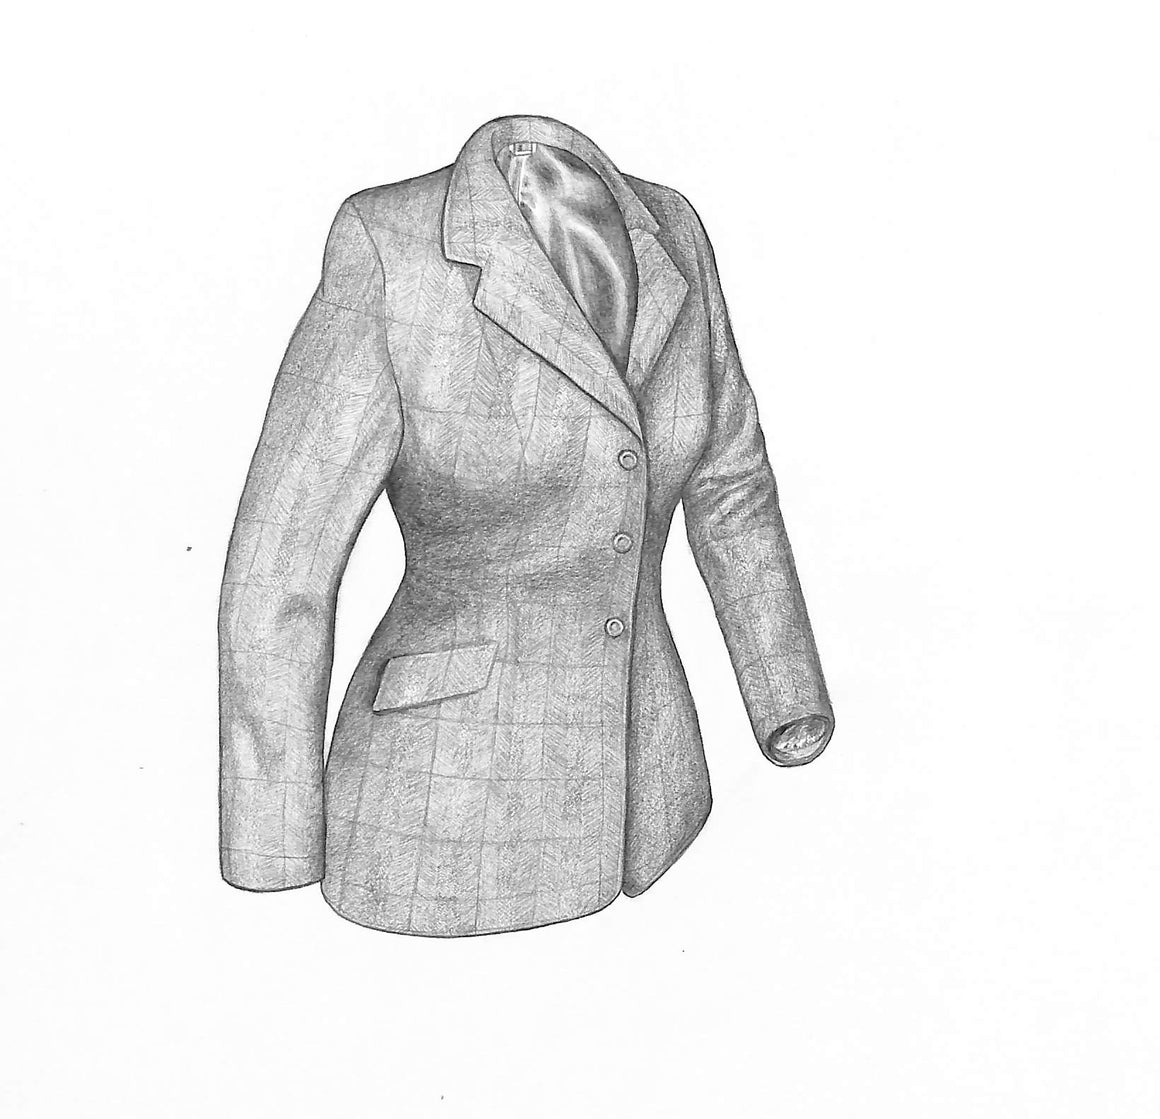 Ladies Tweed Jacket Graphite Drawing